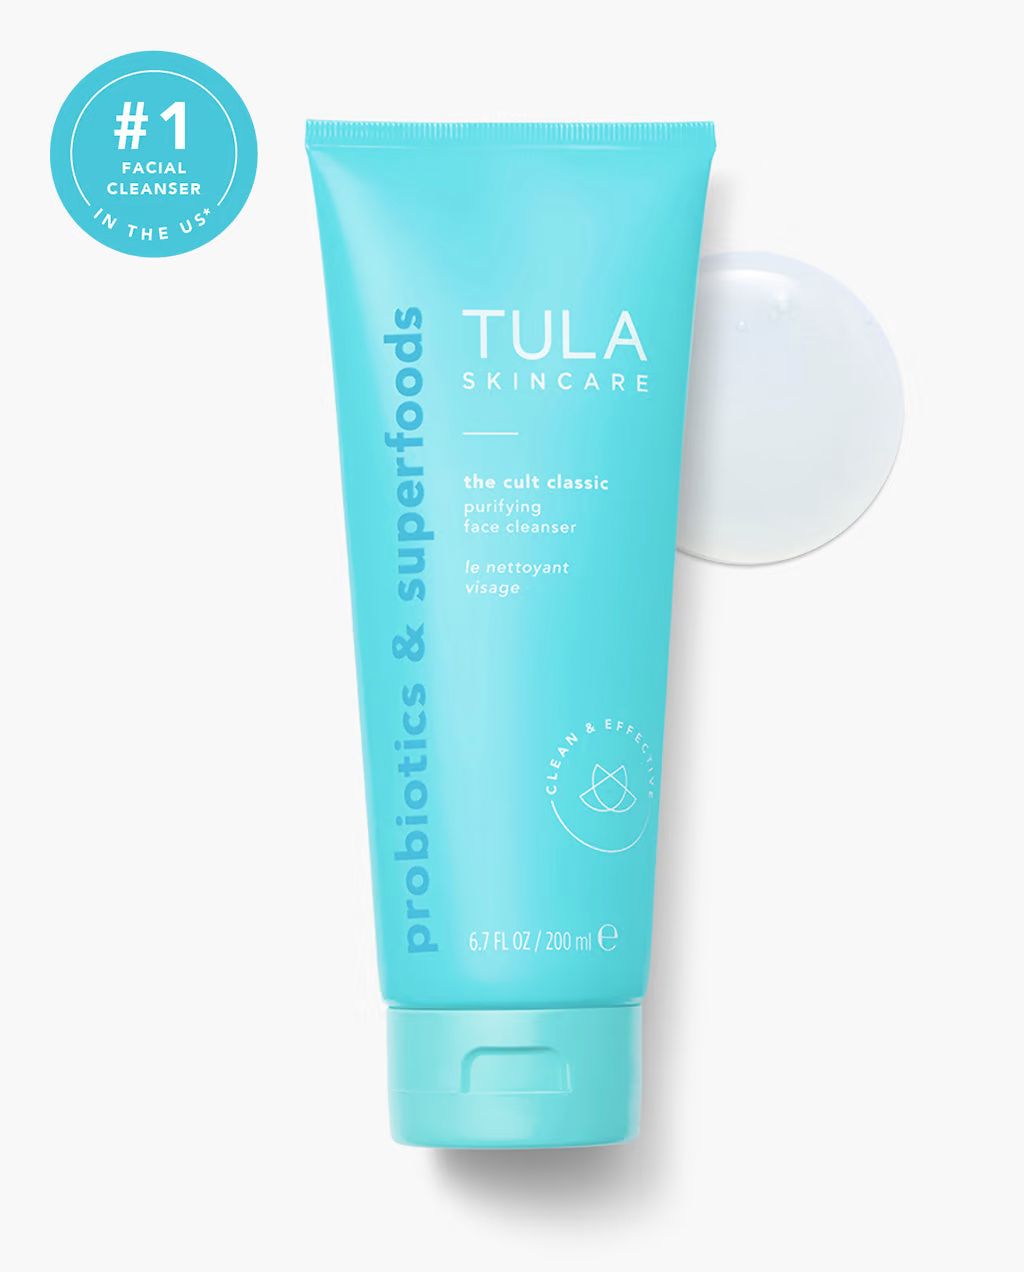 the cult classic | Tula Skincare